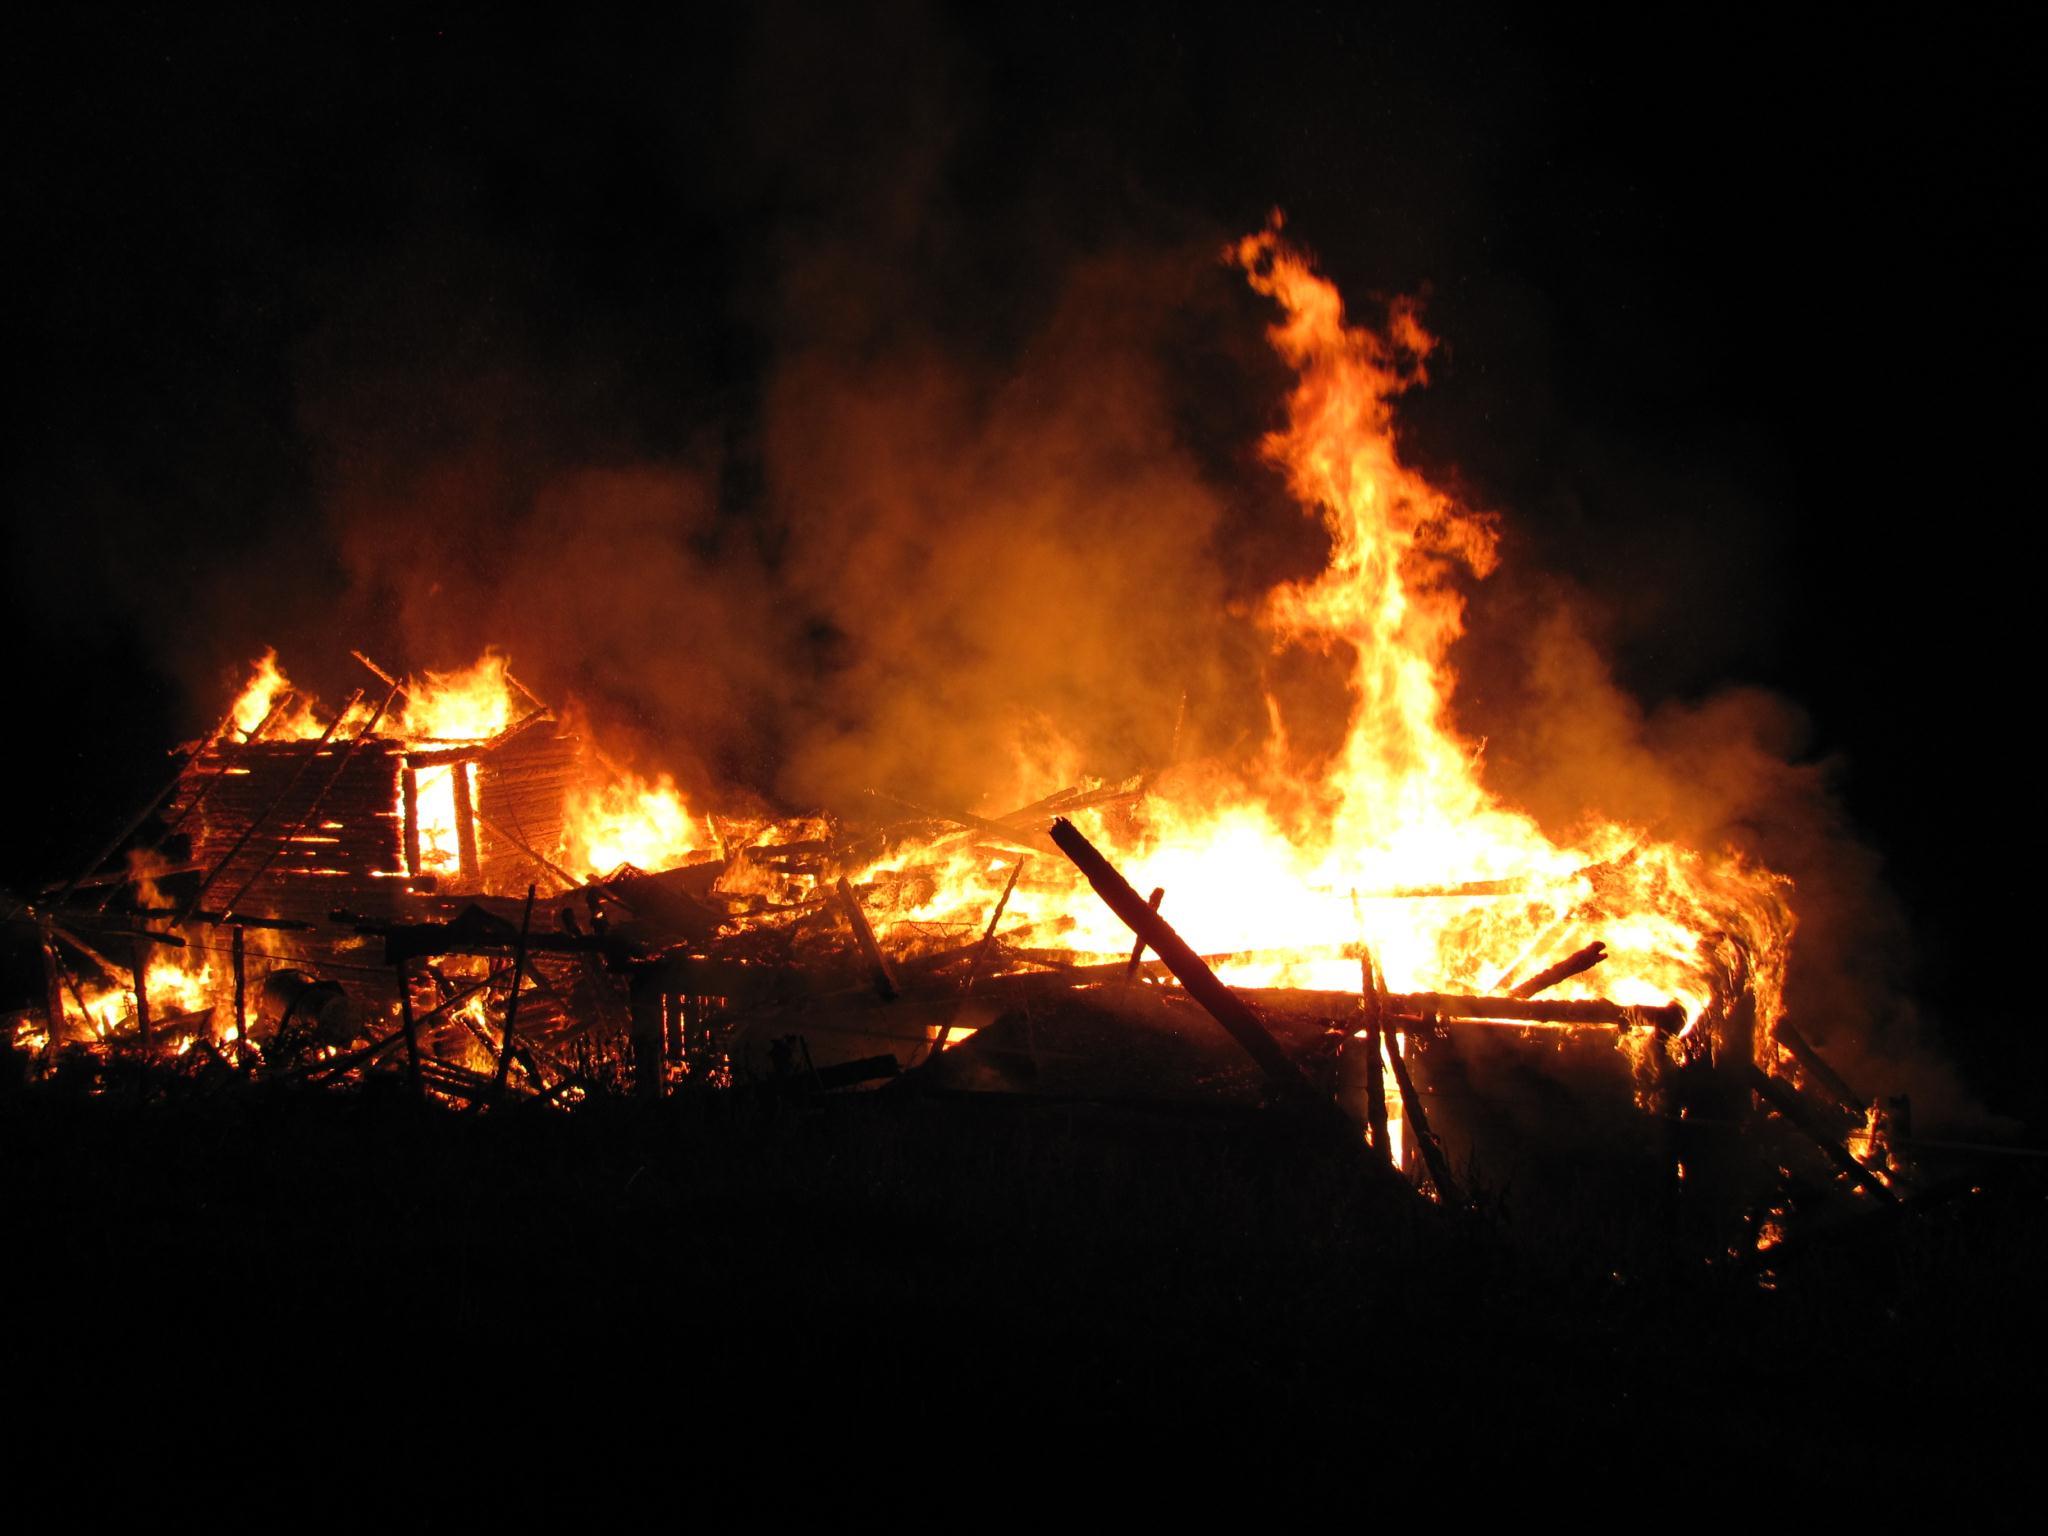 Hütte brannte komplett nieder.